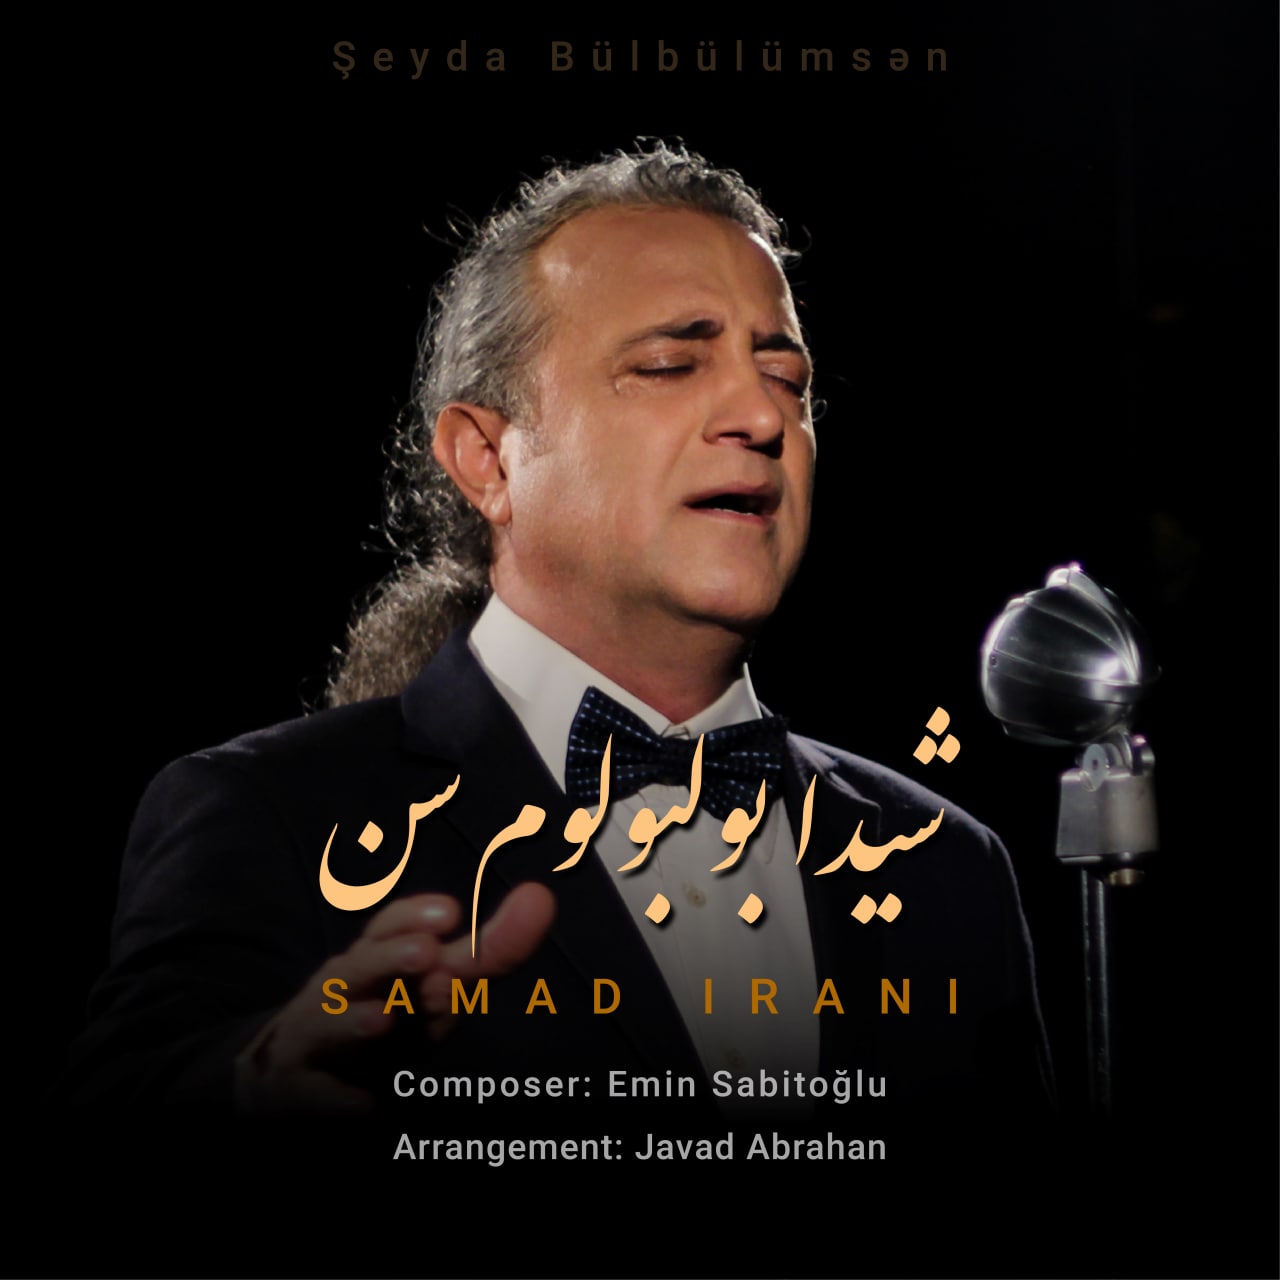 دانلود آهنگ جدید صمد ایرانی با عنوان شیدا بولبولوم سن